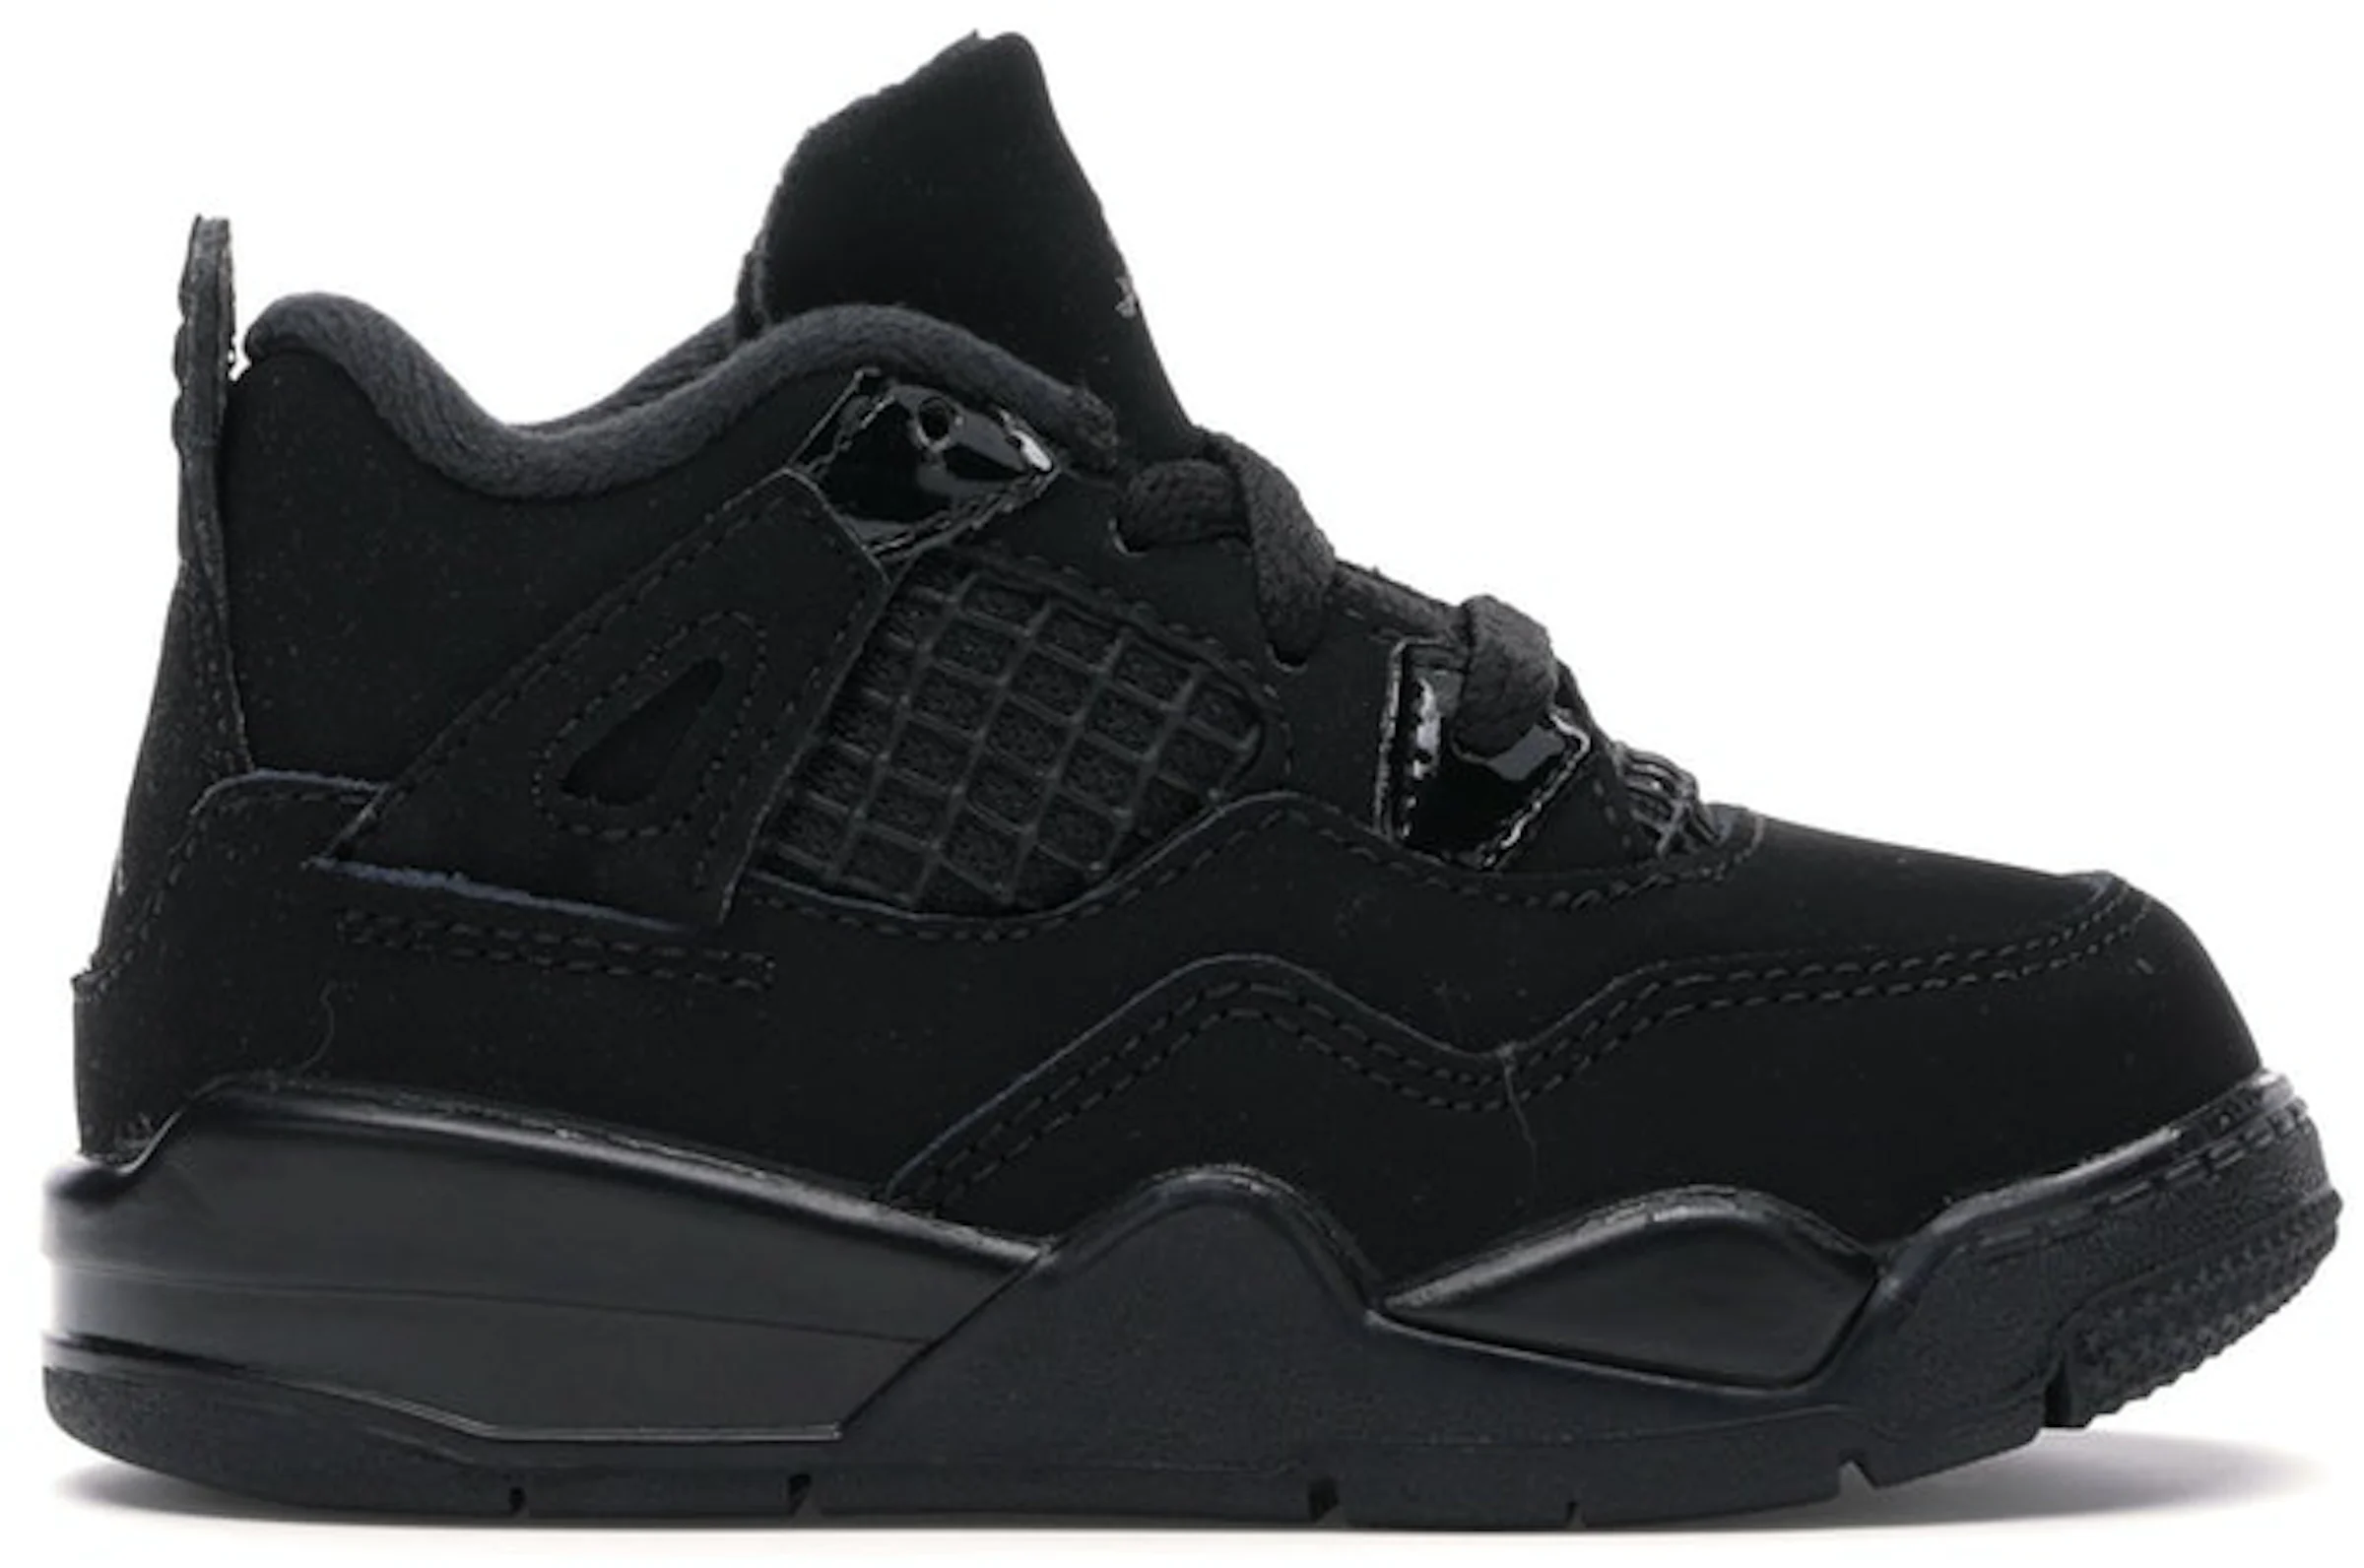 Jordan Air Jordan 4 Retro Black Cat 2020 Sneakers - Farfetch